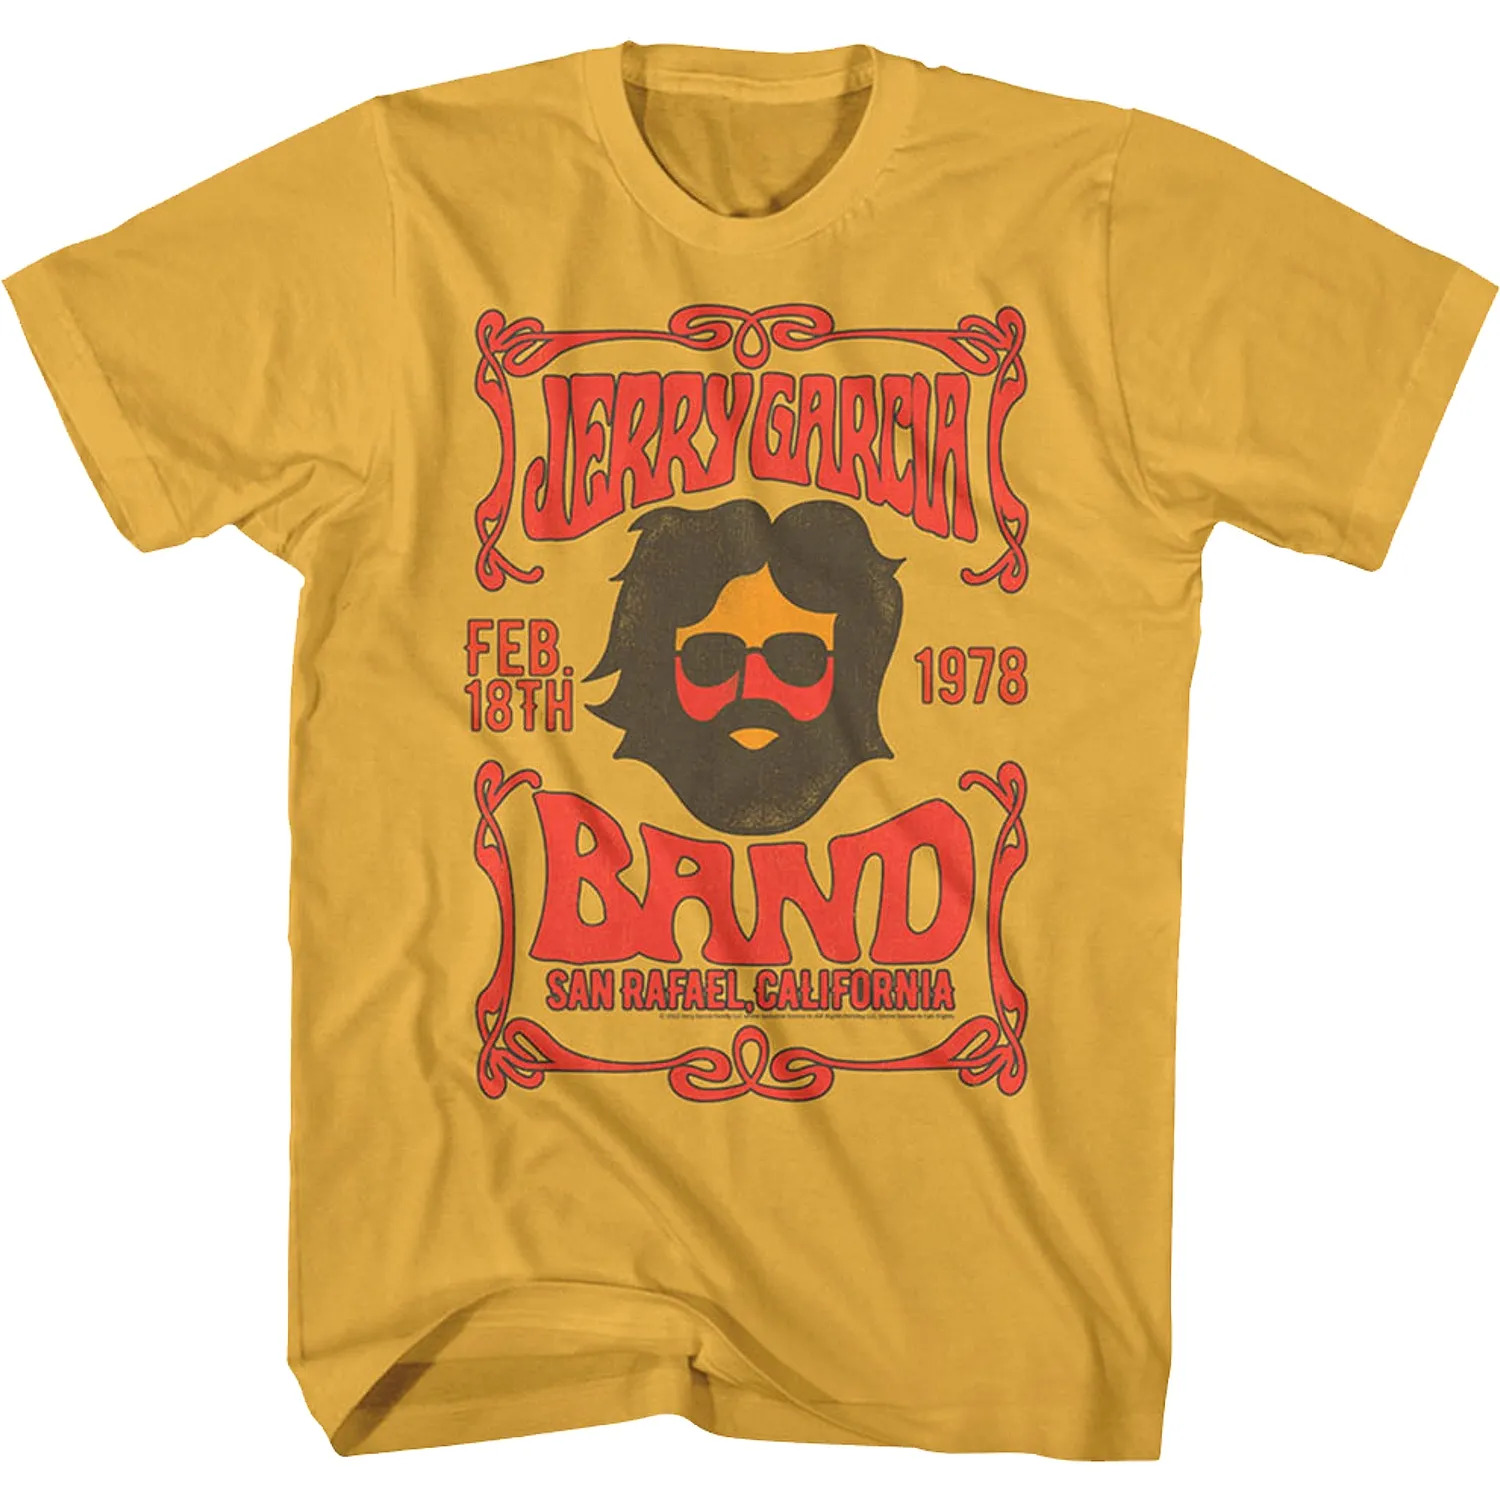 Grateful Dead T shirt,Jerry Garcia, Band T shirt